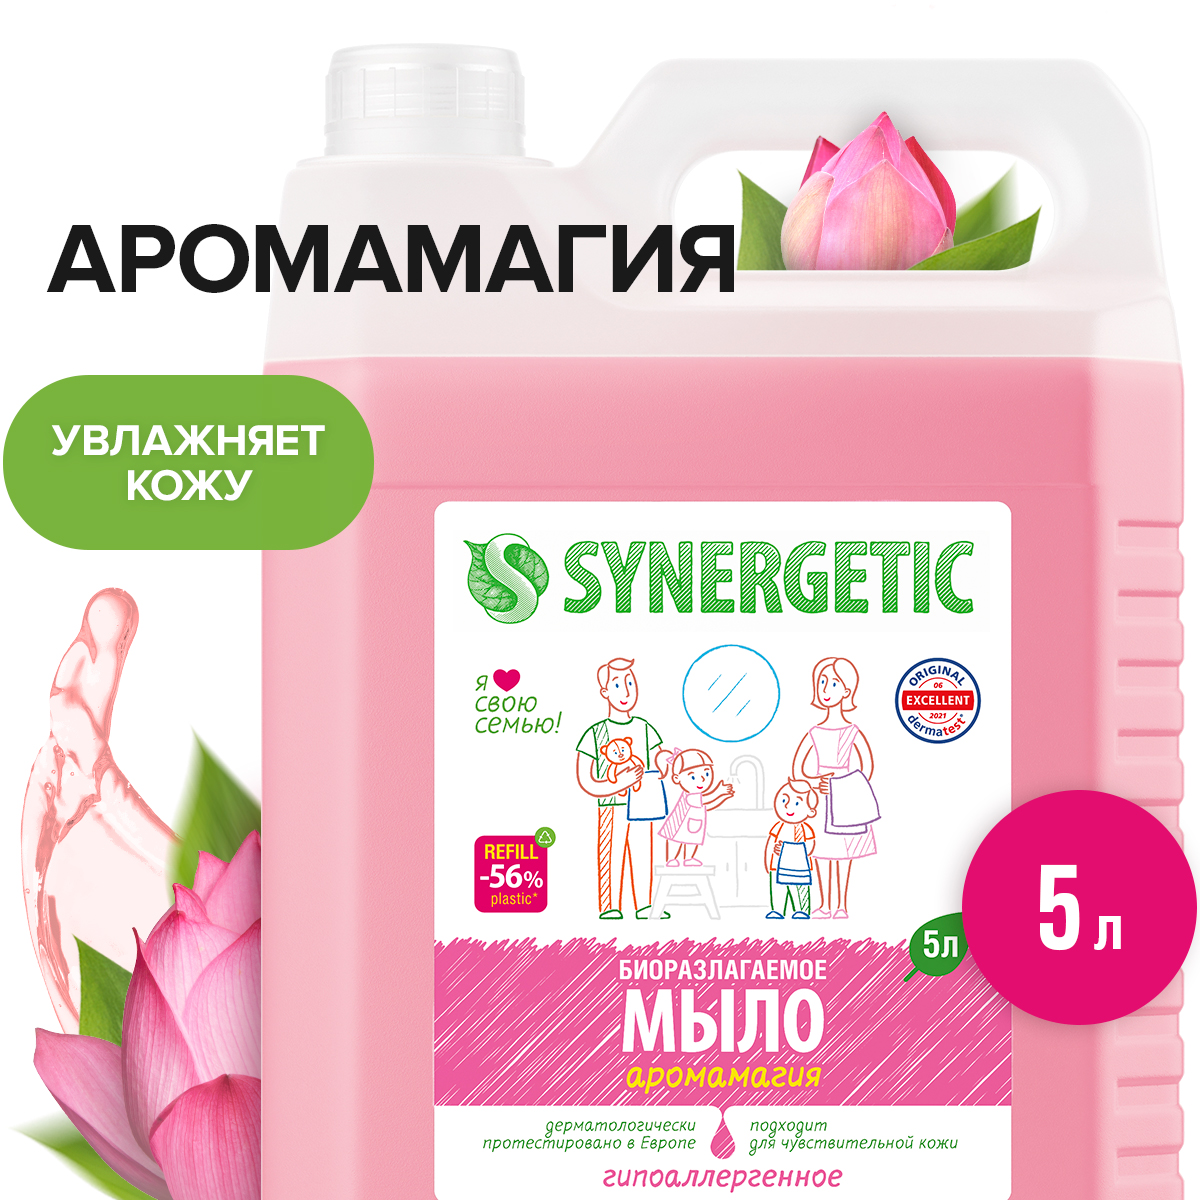 Купить жидкое мыло SYNERGETIC "Аромамагия" с эффектом увлажнения, гипоаллергенное, 5л, цены на Мегамаркет | Артикул: 100024152630